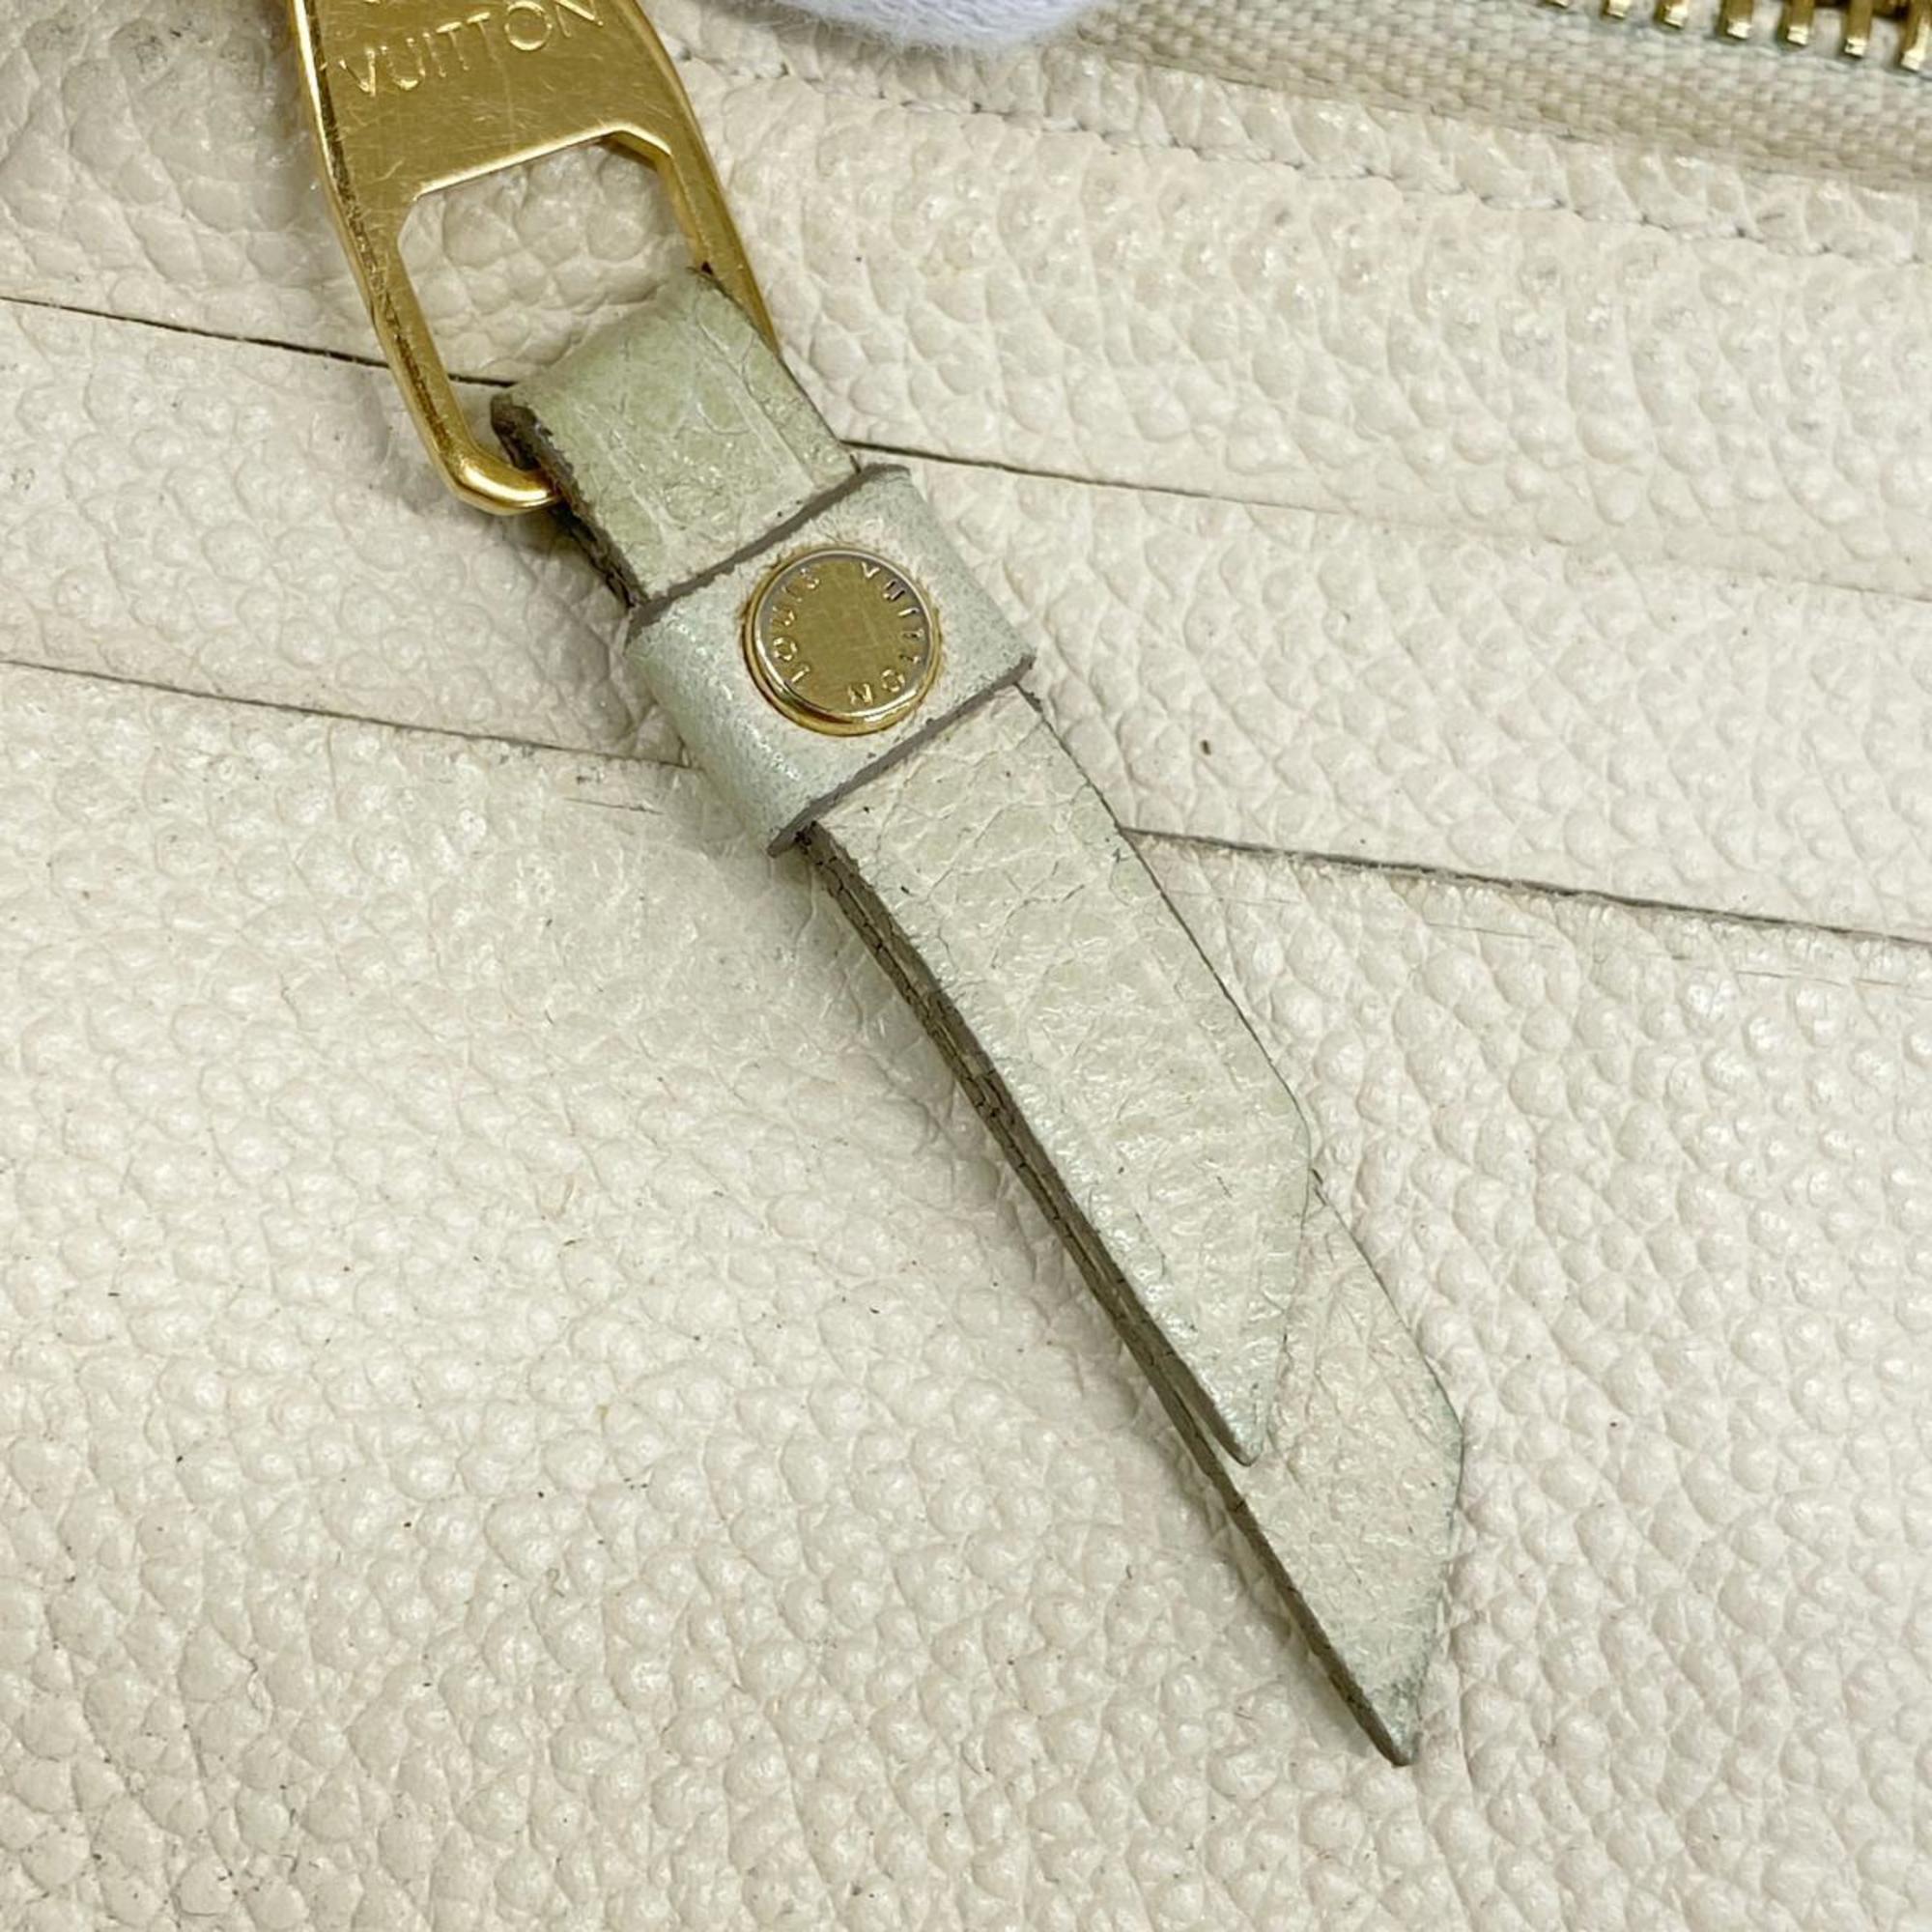 Louis Vuitton Long Wallet Monogram Empreinte Portefeuille Secret M93437 Neige Ladies